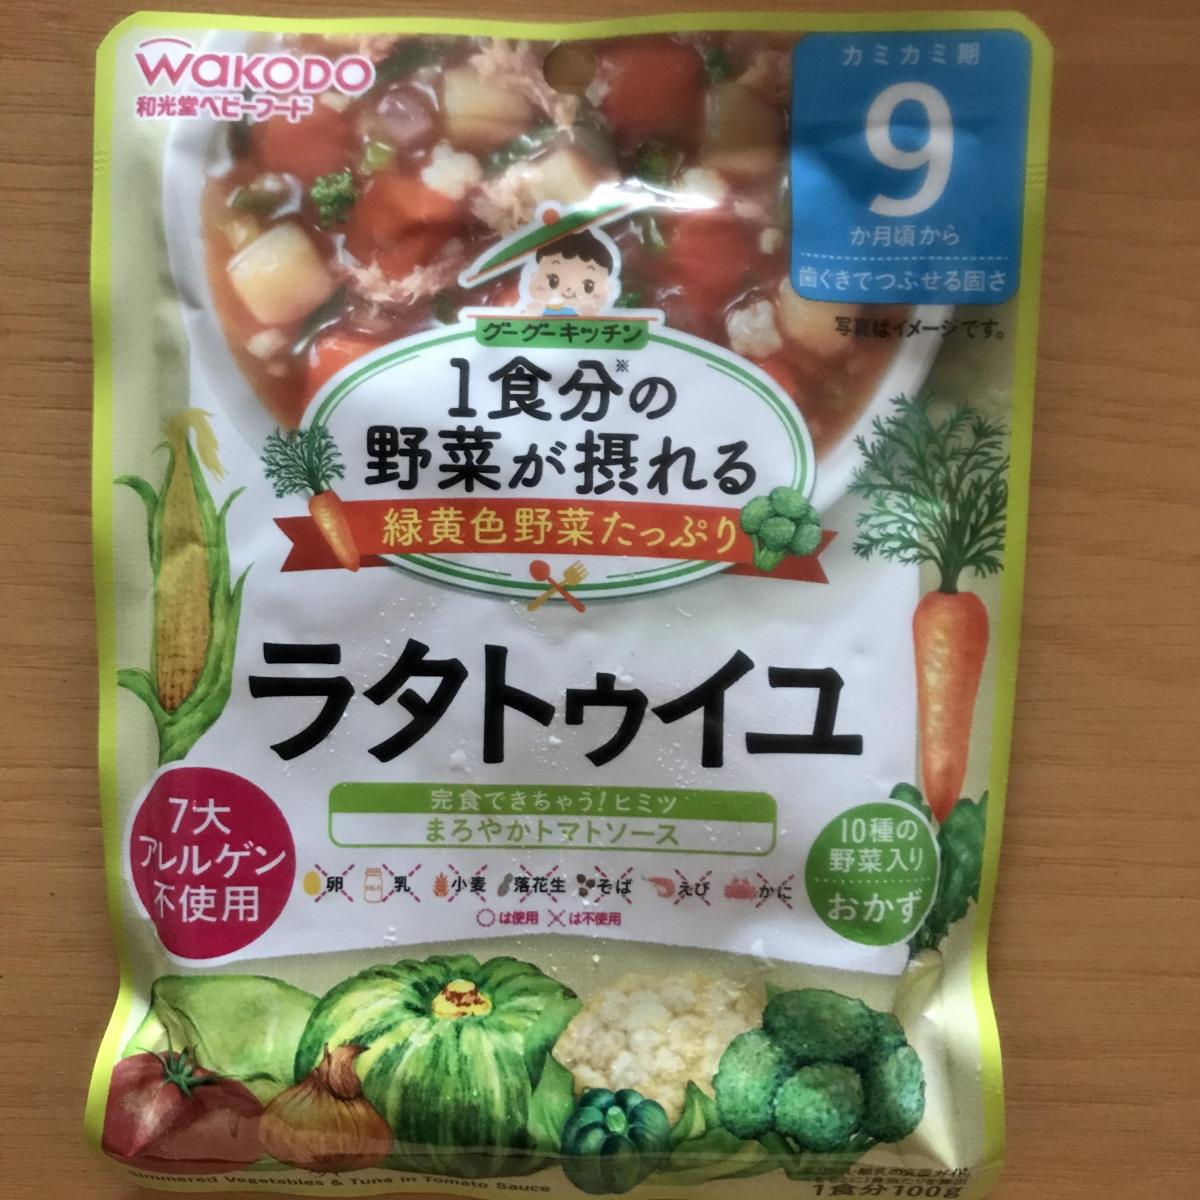 和光堂 1食分の野菜が摂れるグーグーキッチン ラタトゥイユの商品ページ